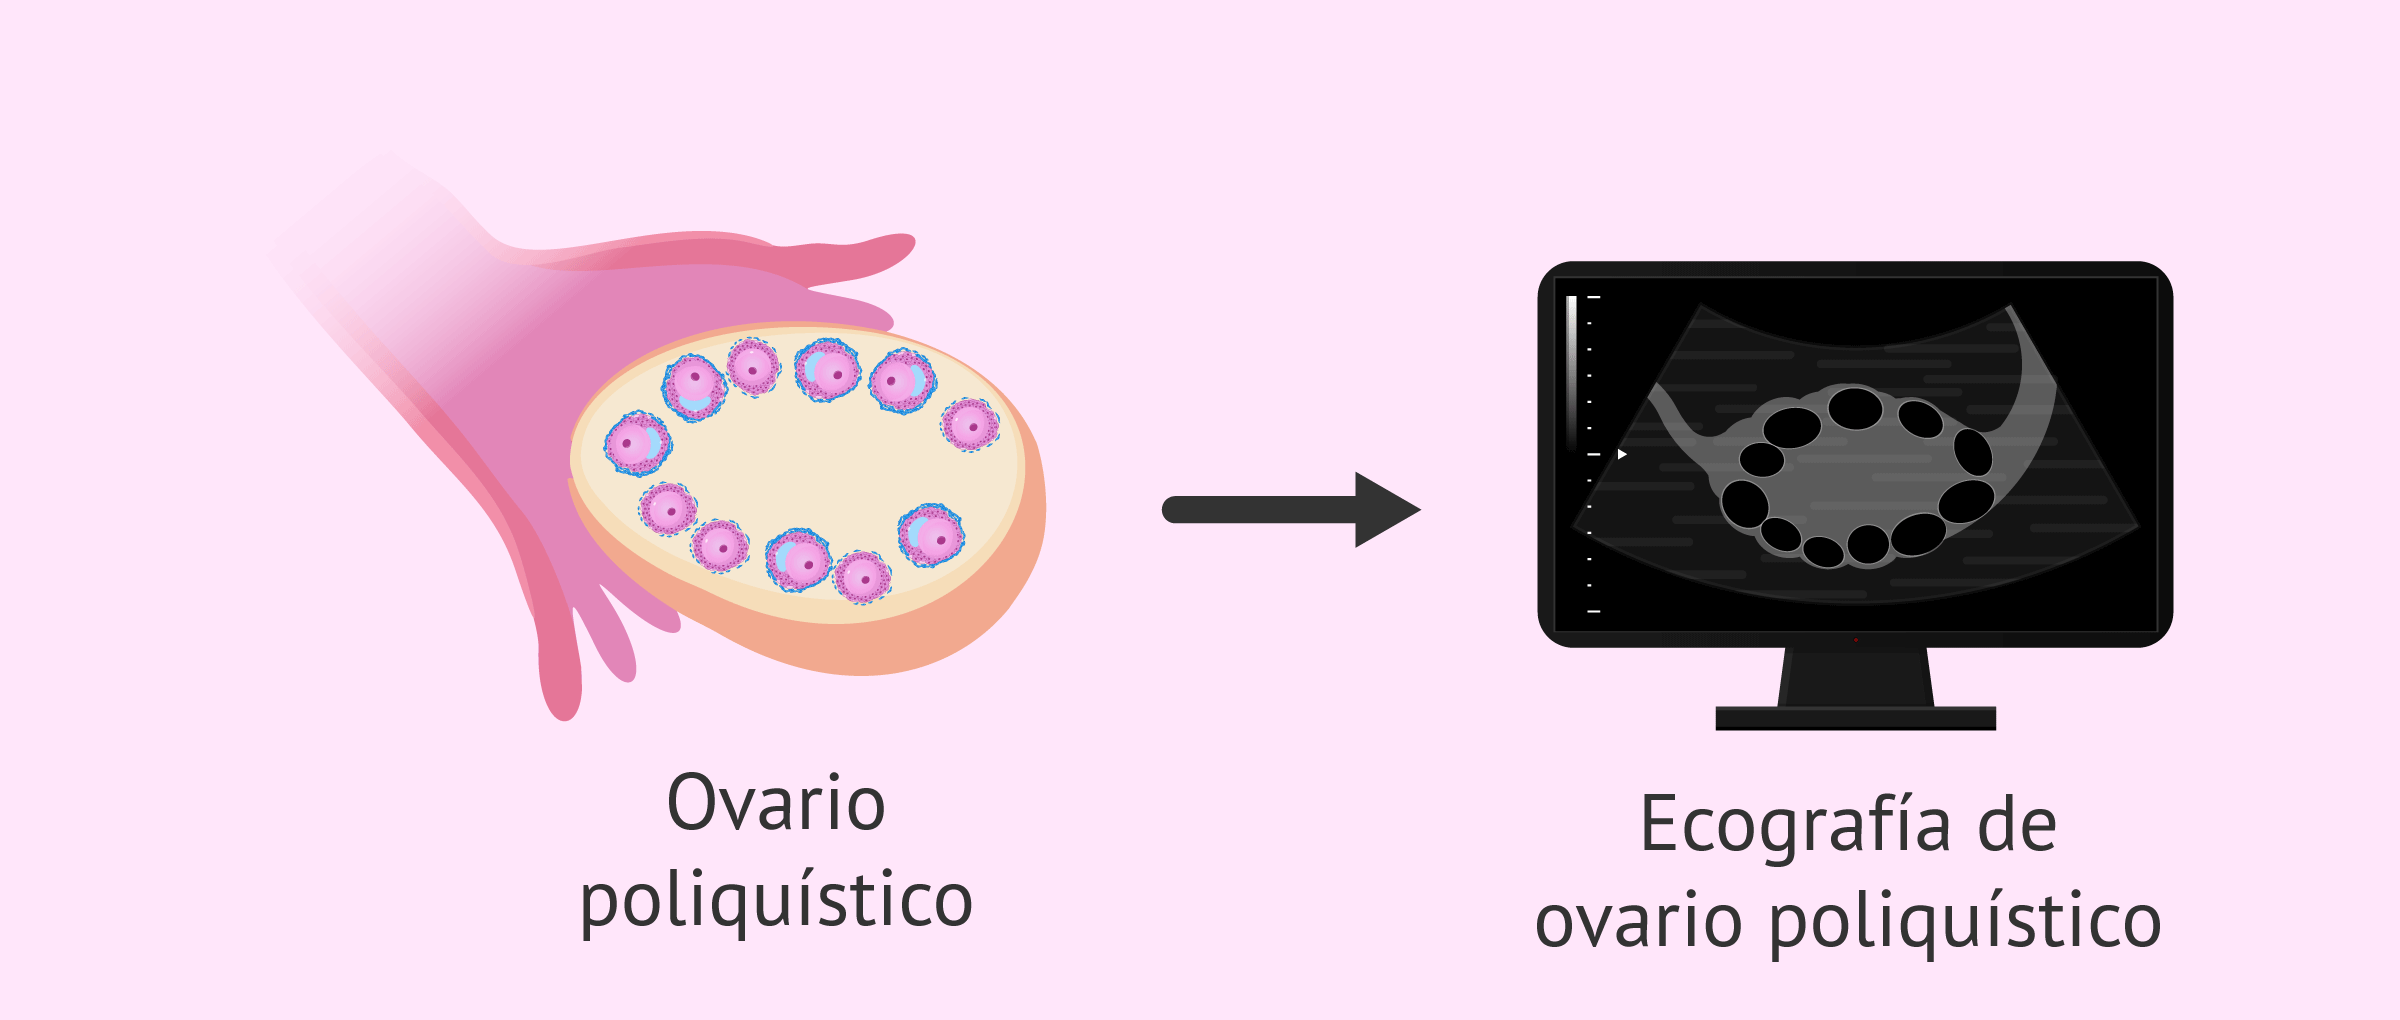 Ecografía de ovario poliquístico